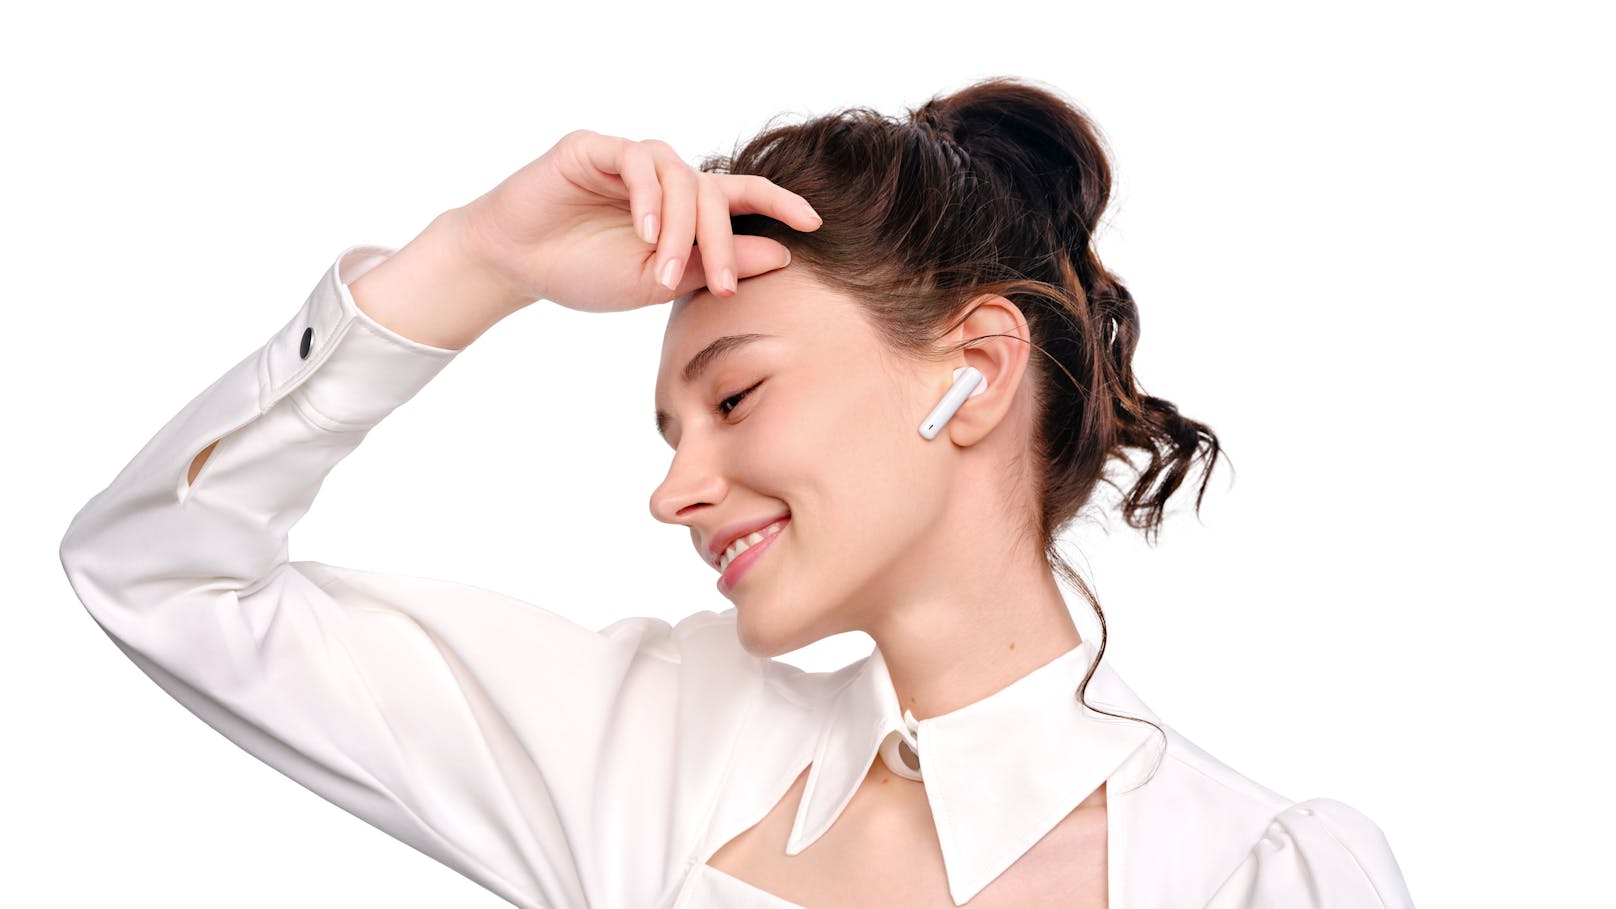 Die Huawei FreeBuds 4i sollen durch stärkere Akkuleistung und intelligente aktive Geräuschunterdrückung auffallen. Kosten werden sie 99 Euro in Schwarz und Weiß.